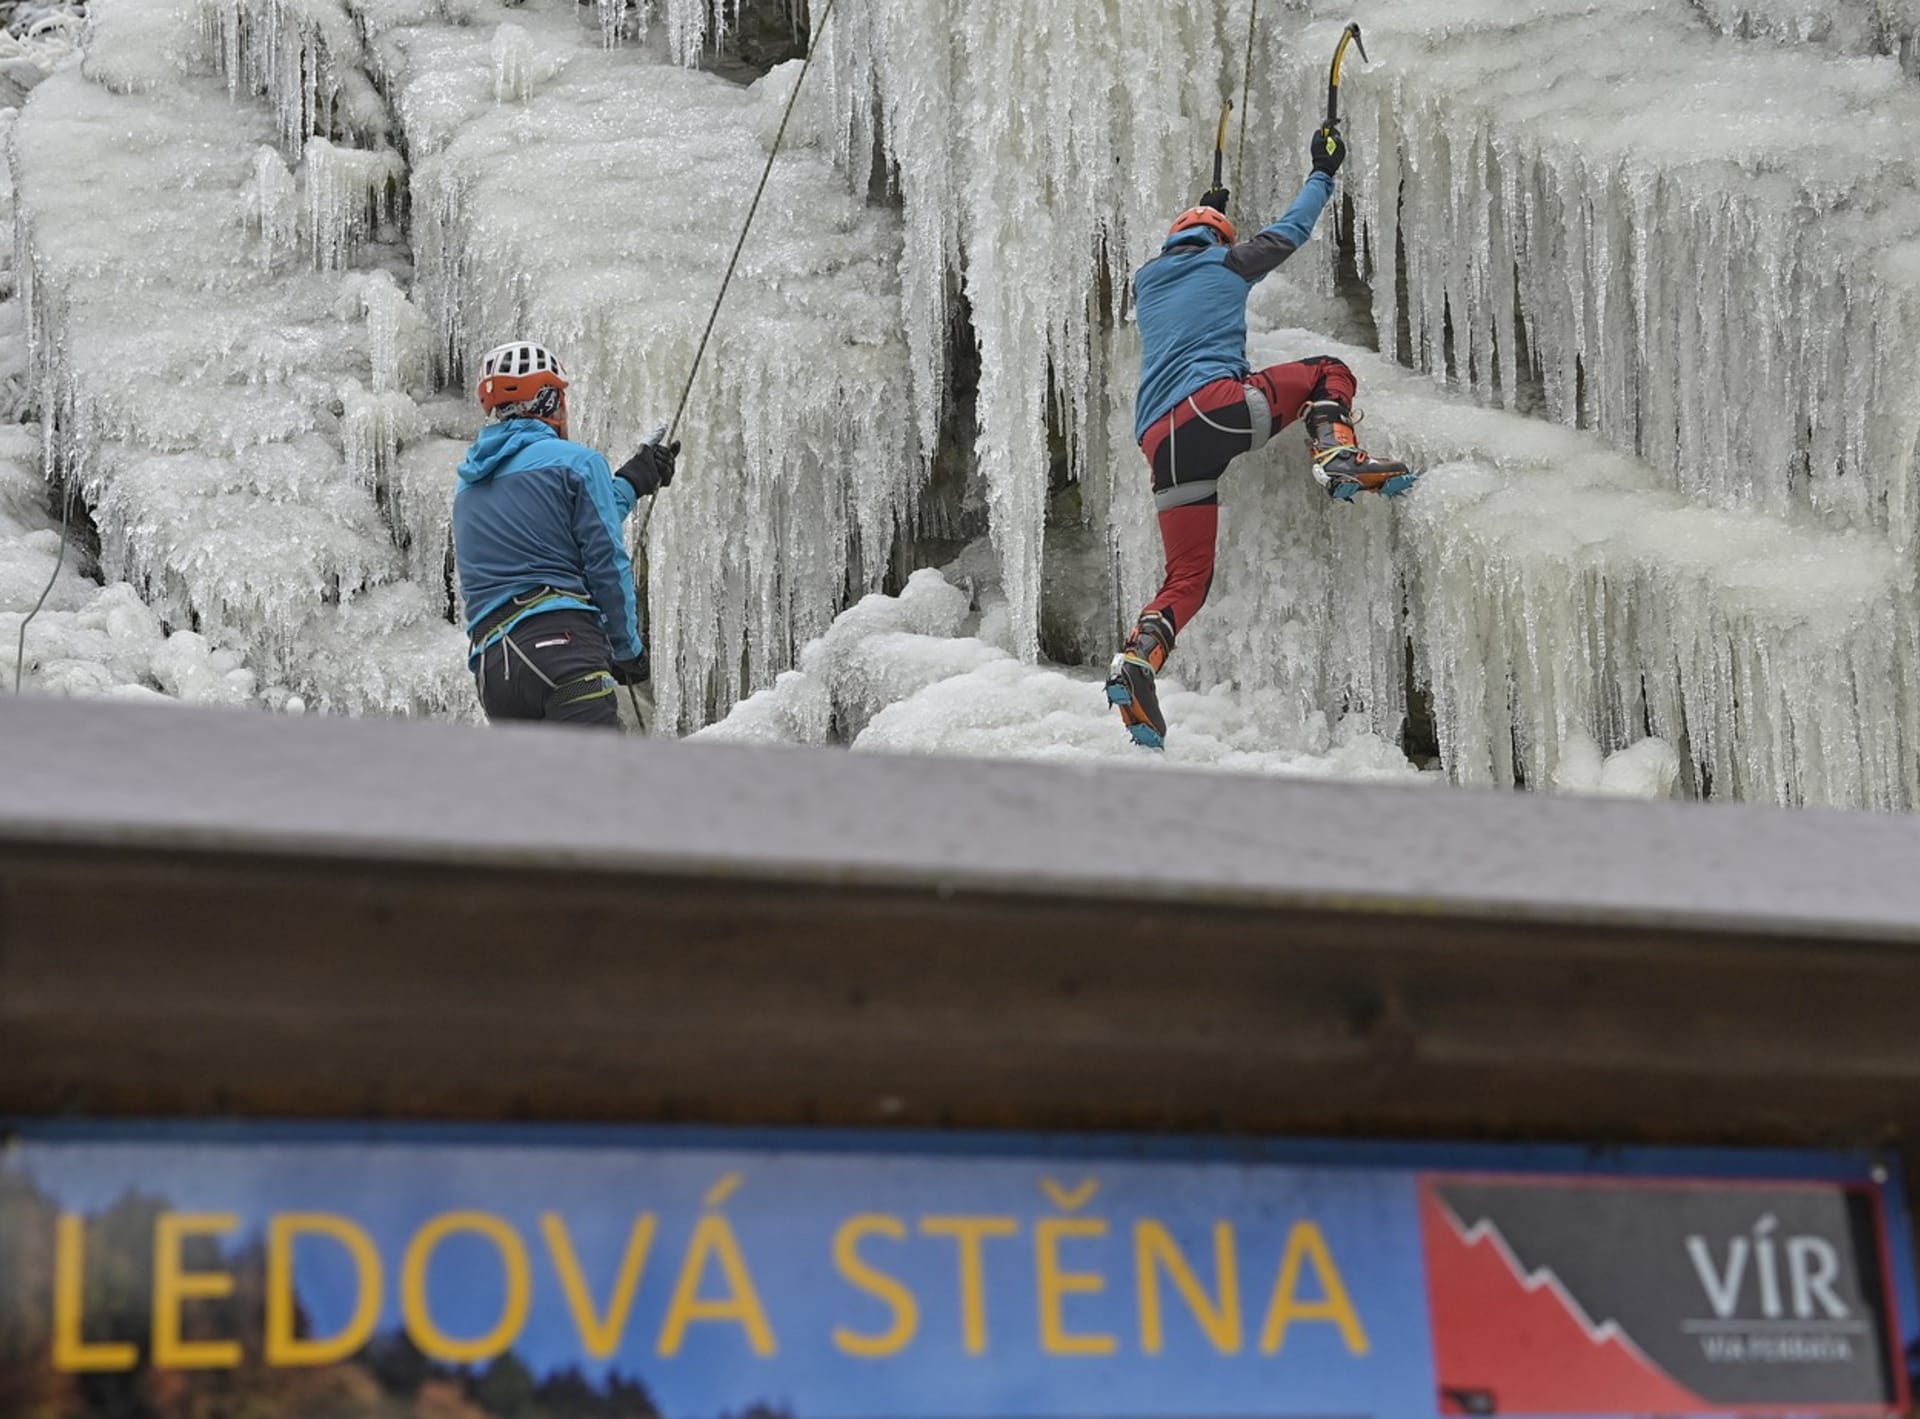 Ledová stěna Vír v hlubokém údolí řeky Svratky, dva umělé ledopády na dvou 45 metrů vysokých skalách nad řekou Svratkou, byly poprvé v letošní zimní sezóně otevřeny veřejnosti 13. ledna. 